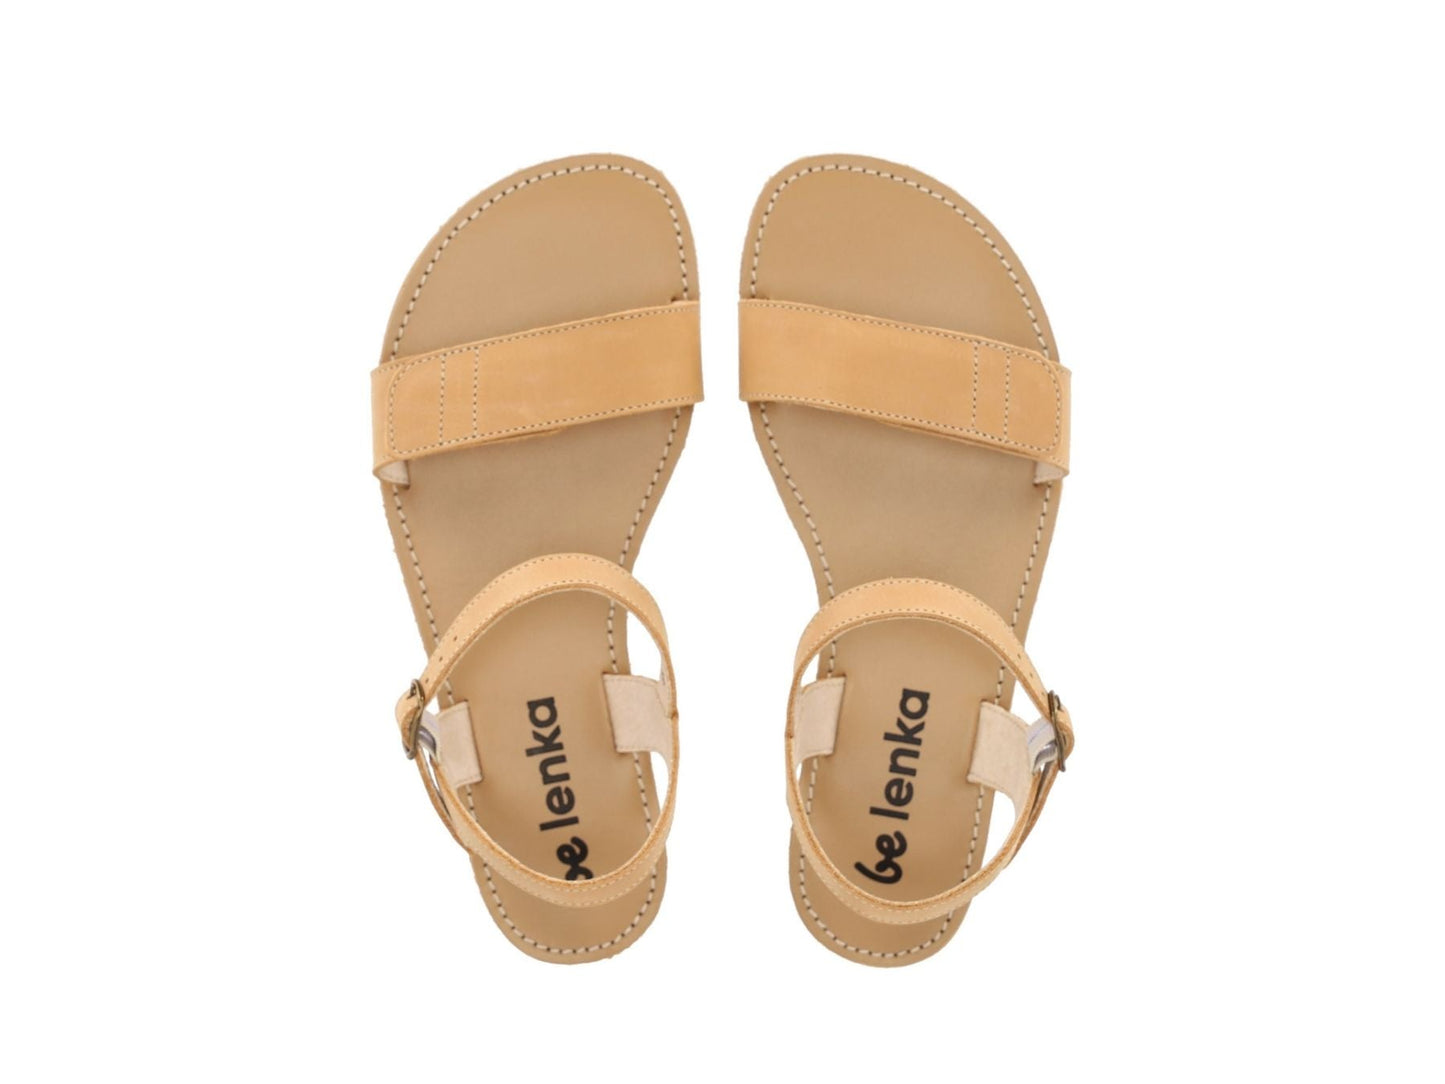 Barefoot Sandals - Be Lenka Grace - Sand-Be Lenka-Cacles Barefoot